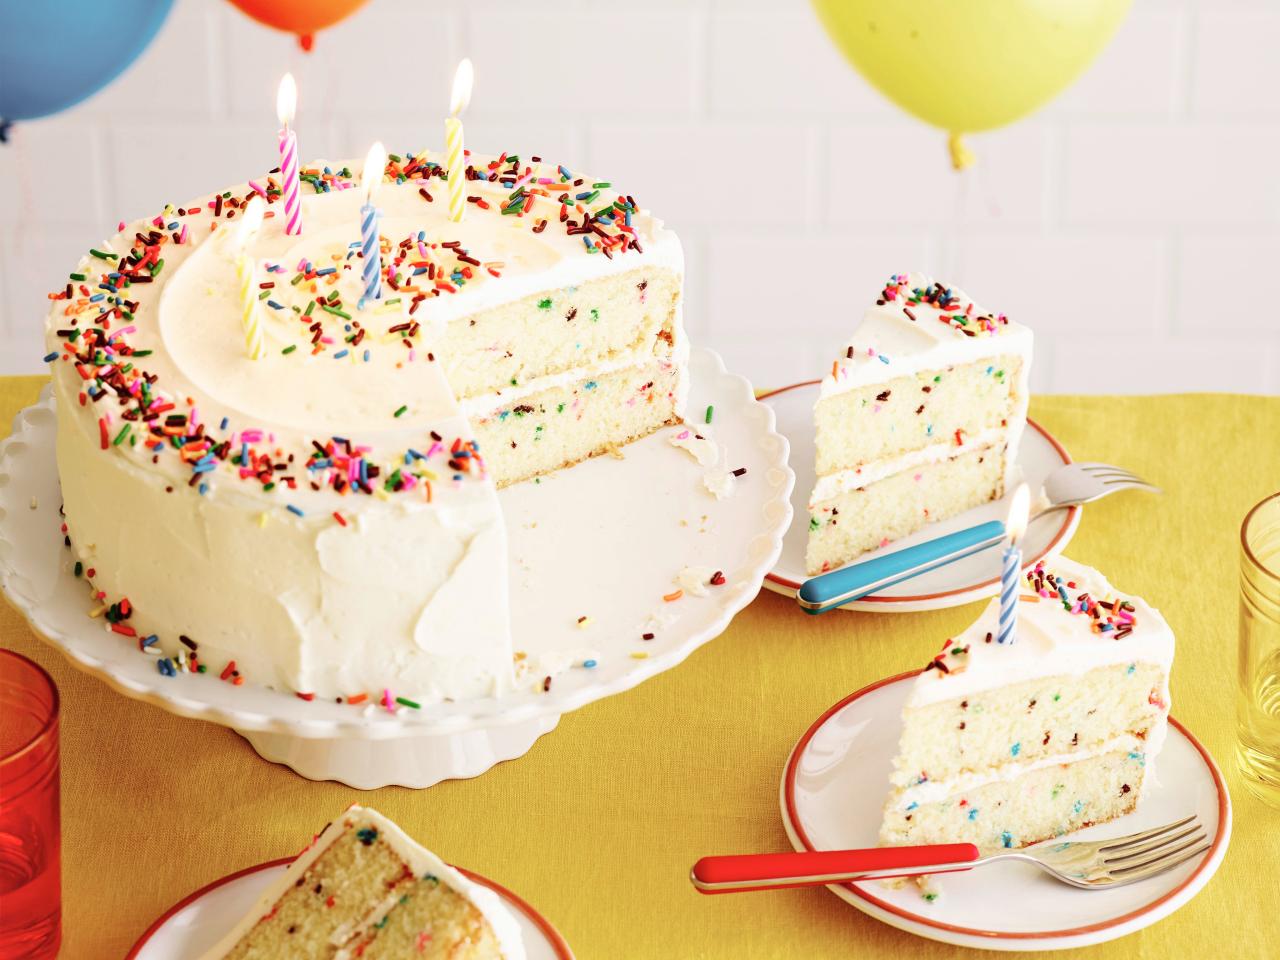 Classic Vanilla Cake Recipe | How to Make Birthday Cake - YouTube